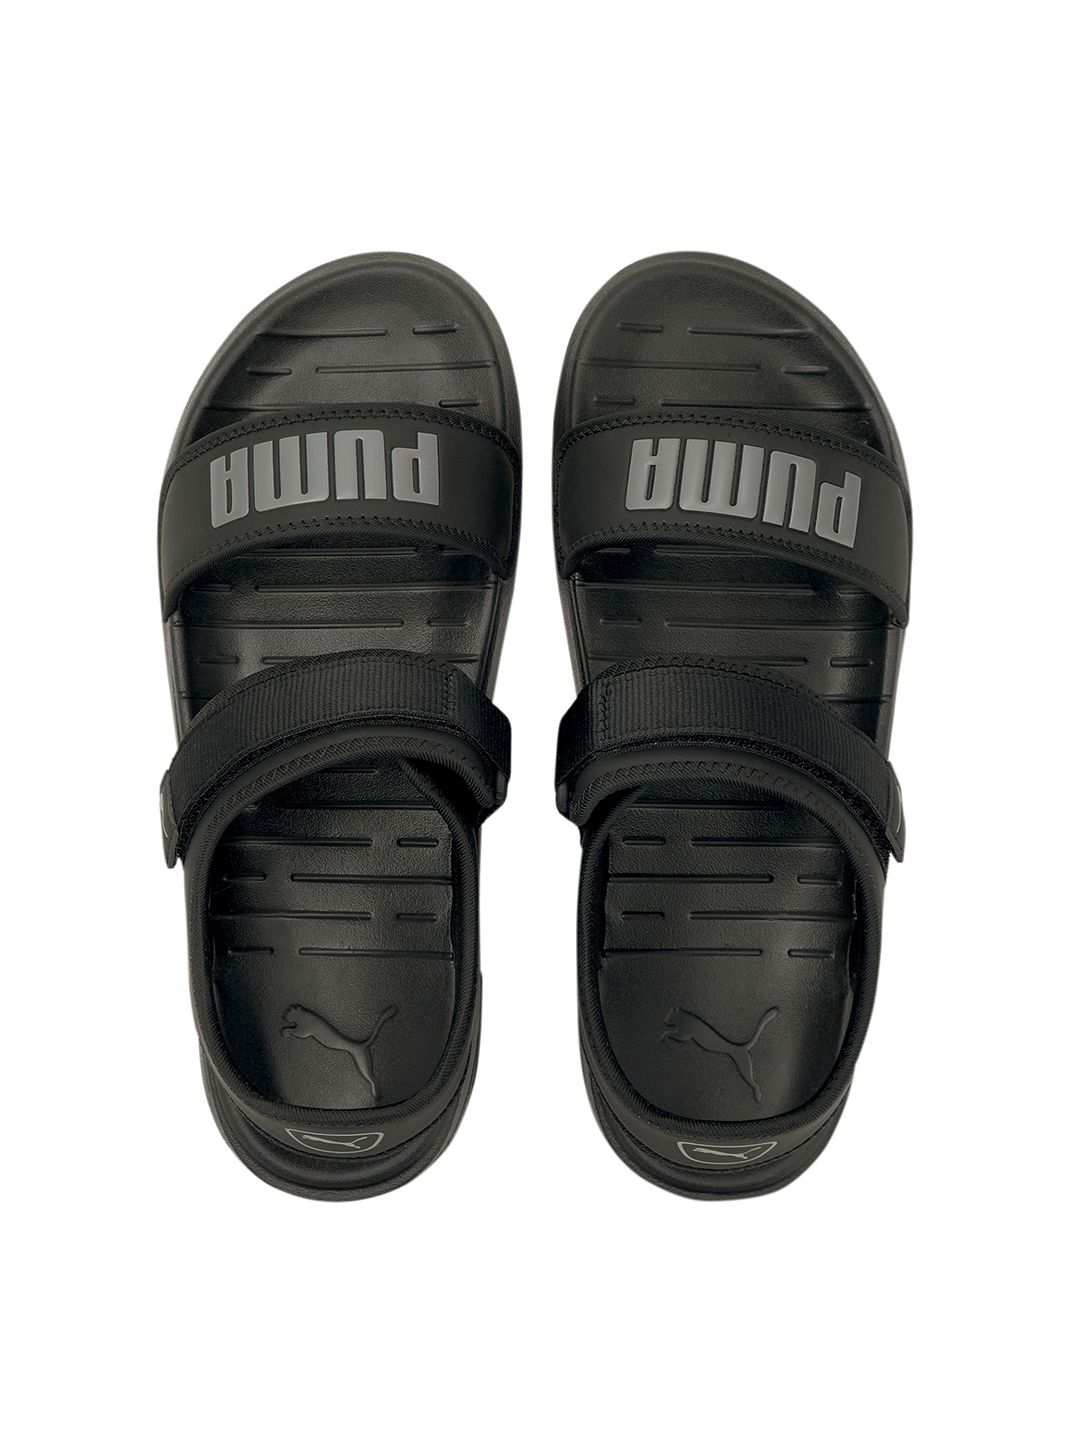 Puma Unisex Black Softride Sandal Price in India